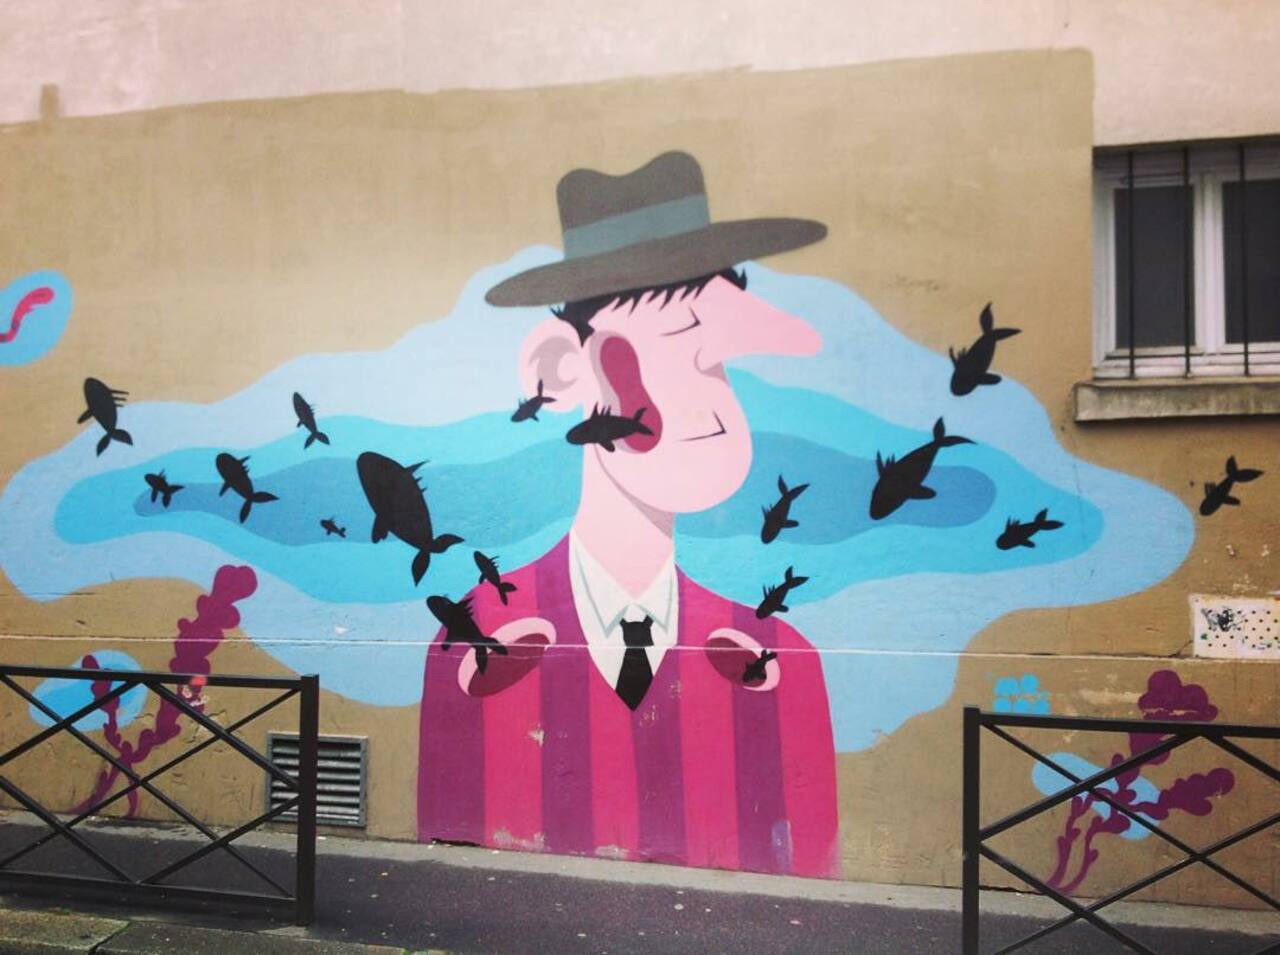 #Paris #graffiti photo by @stefetlinda http://ift.tt/1MkrueO #StreetArt https://t.co/SKP6djU9h2